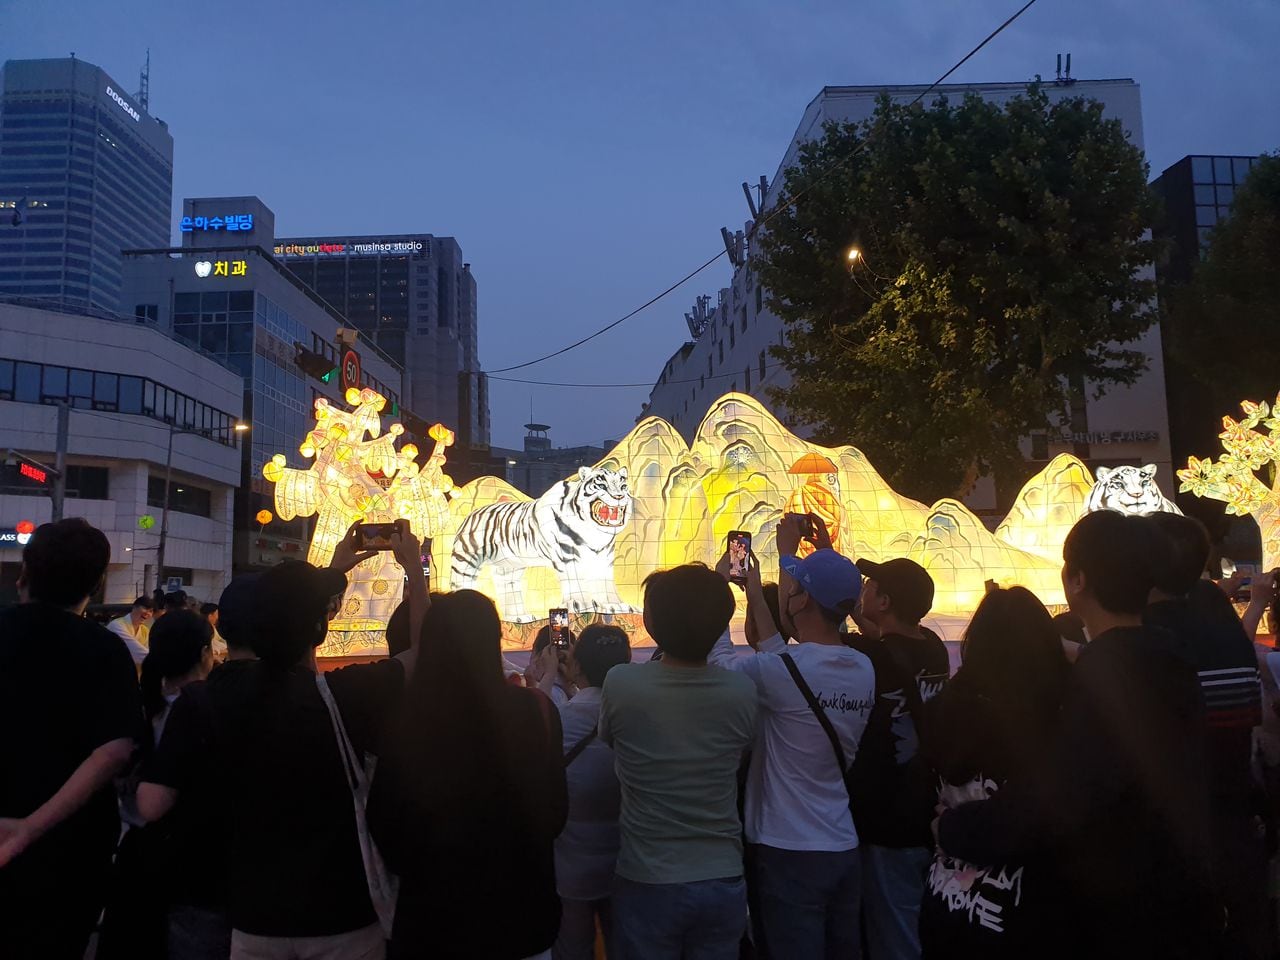 20일 연등행렬에 등장한 호랑이 등불과 이를 사진에 담는 시민들 모습/ 박혜연 기자